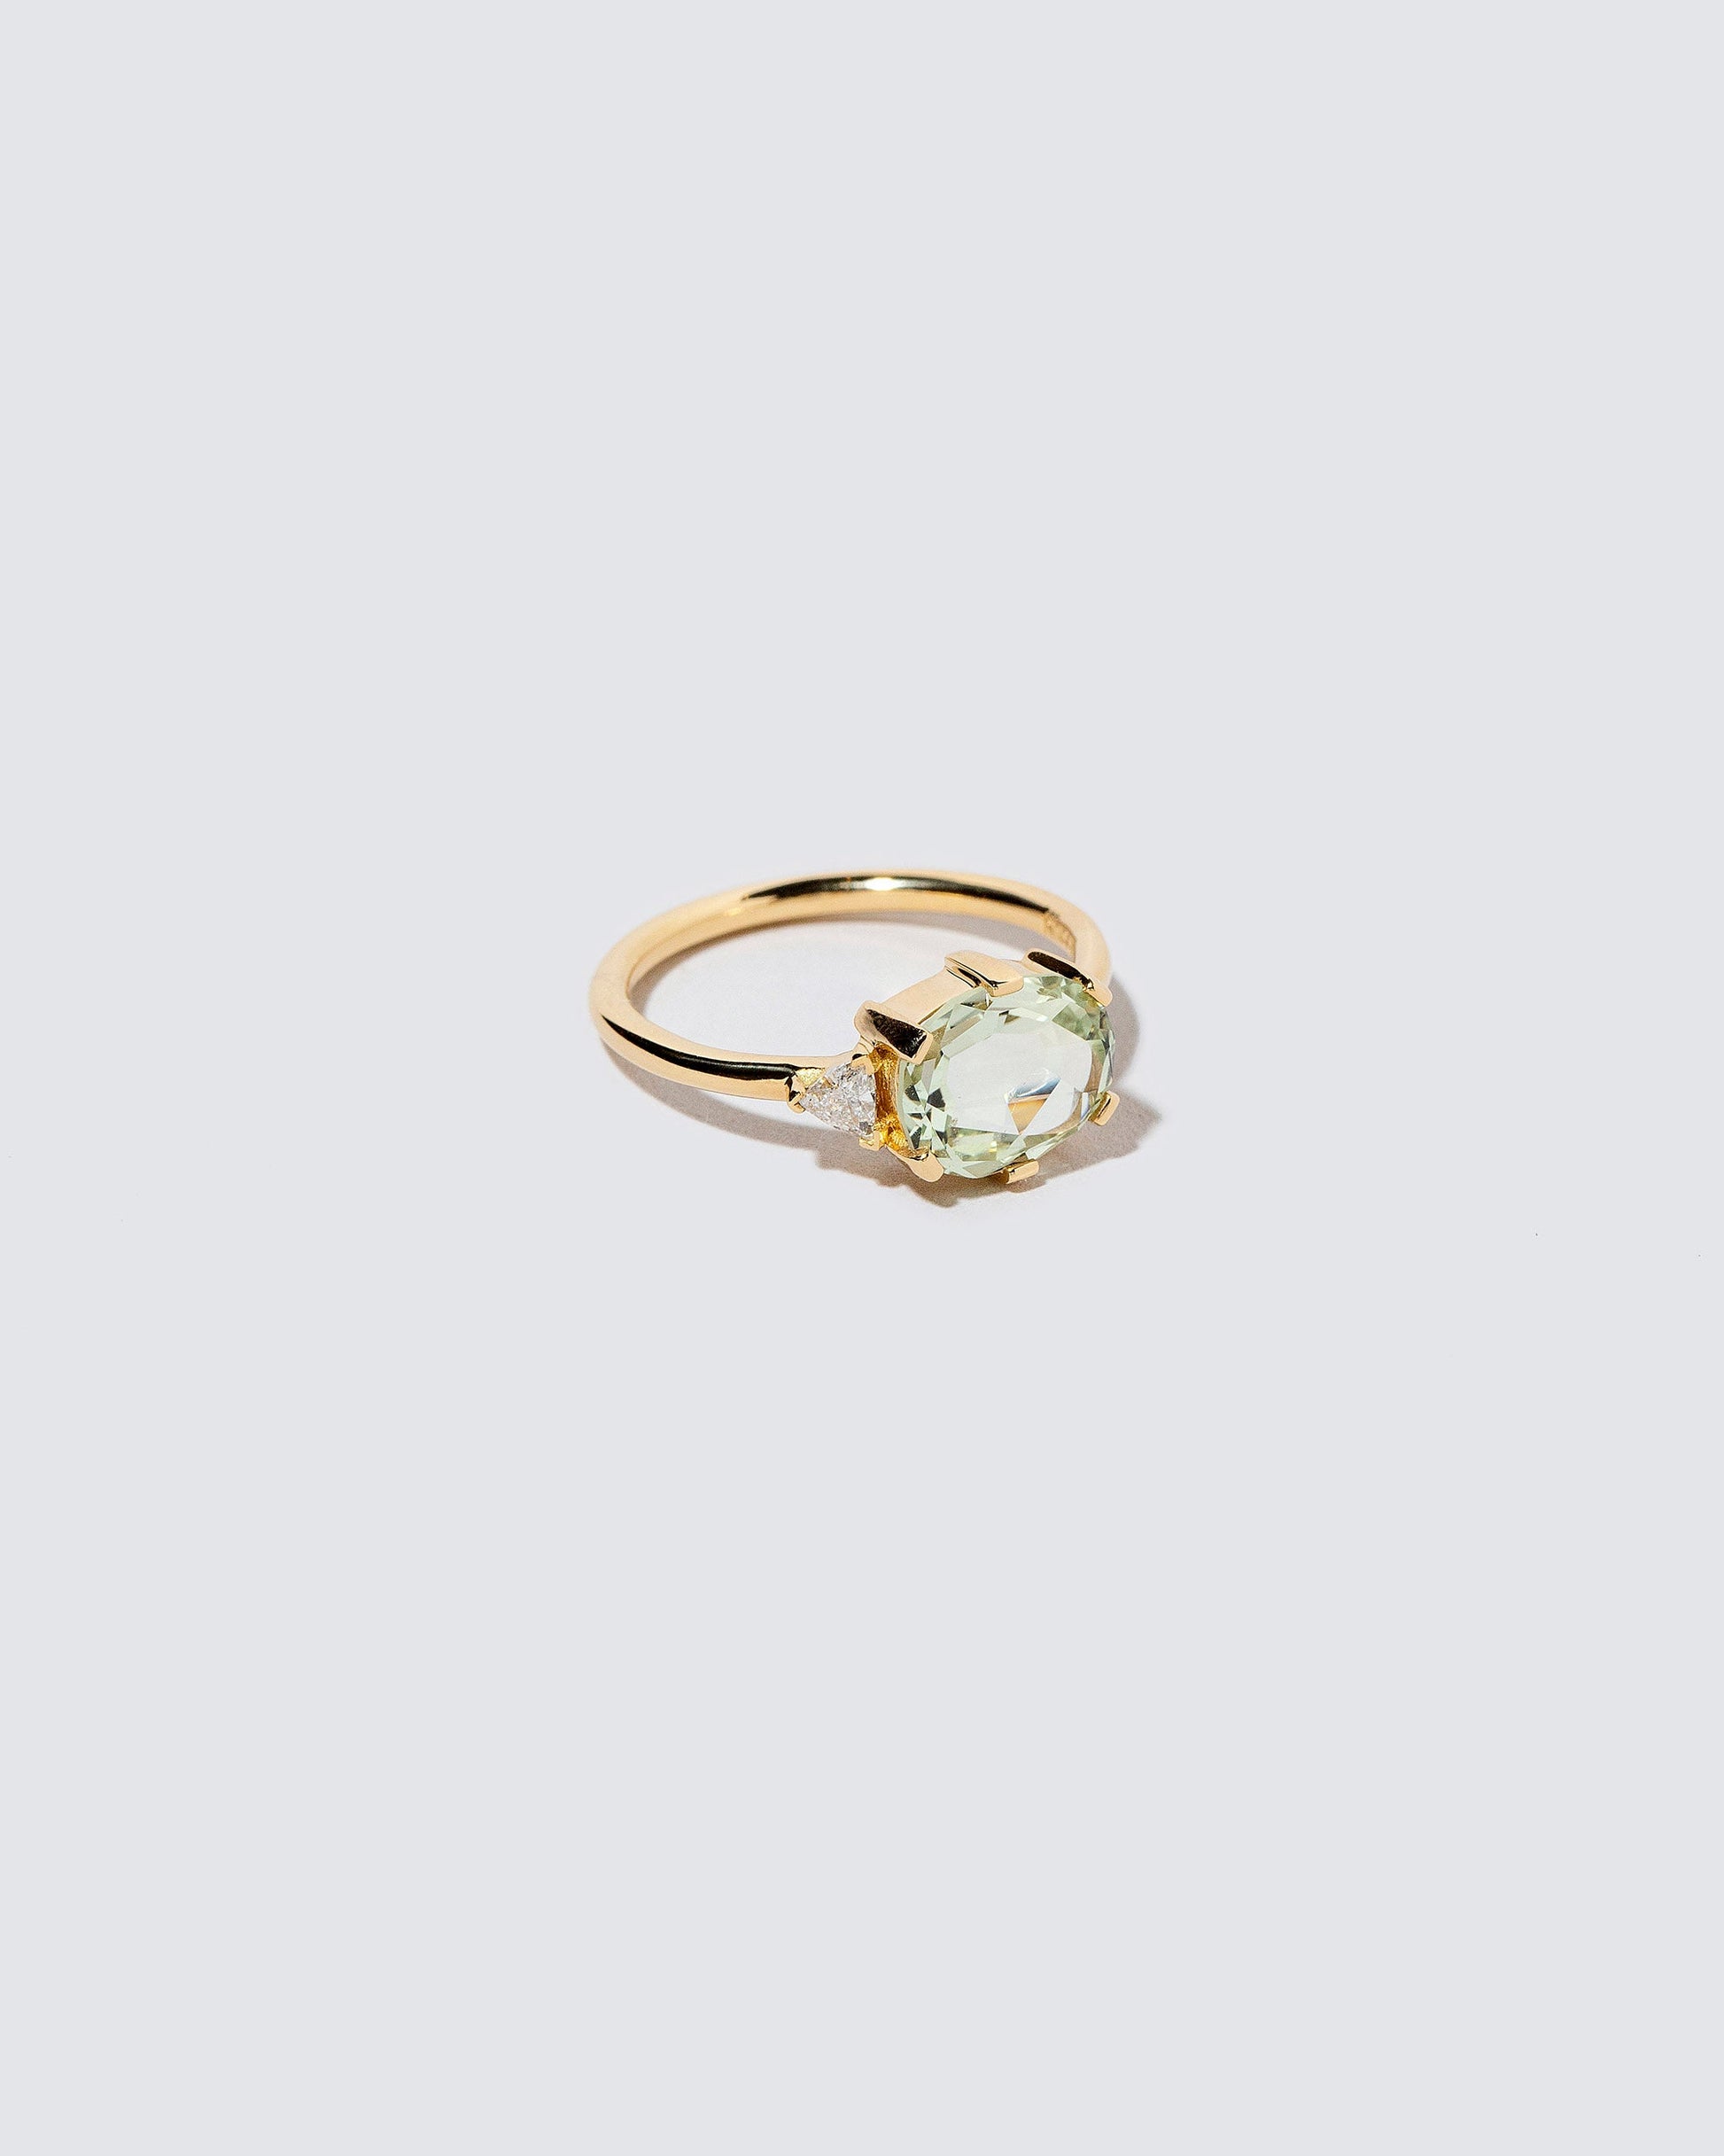  Laurel Ring on light color background.